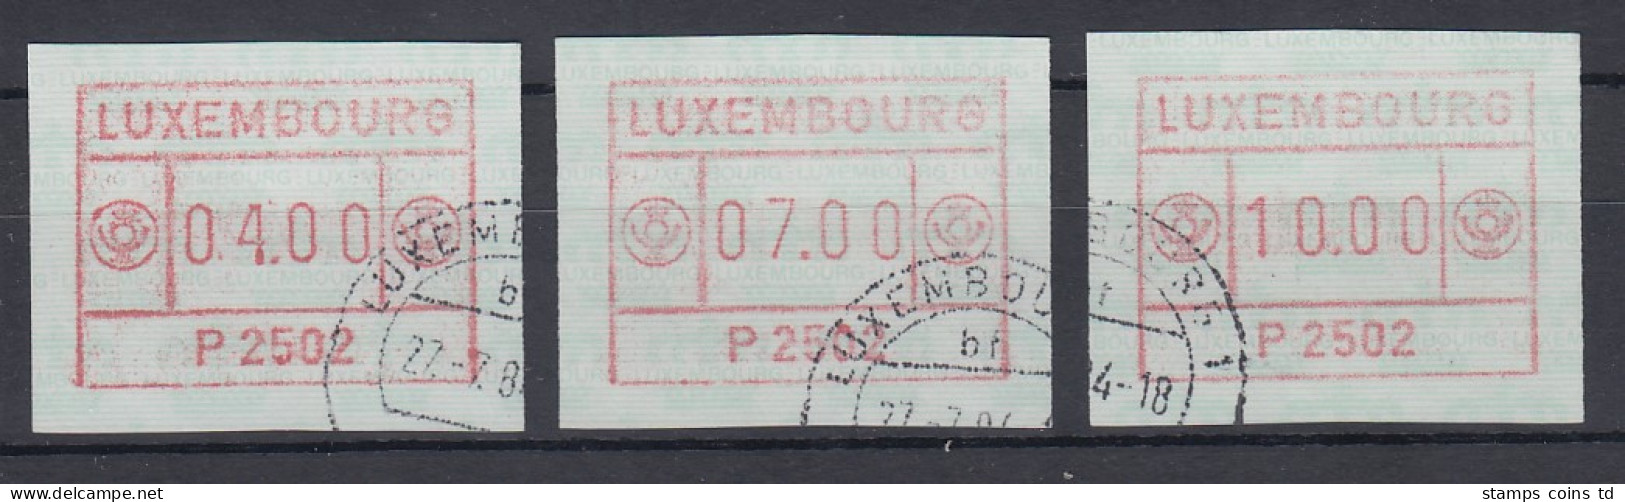 Luxemburg ATM P2502 Tastensatz 4-7-10 Gestempelt - Automatenmarken